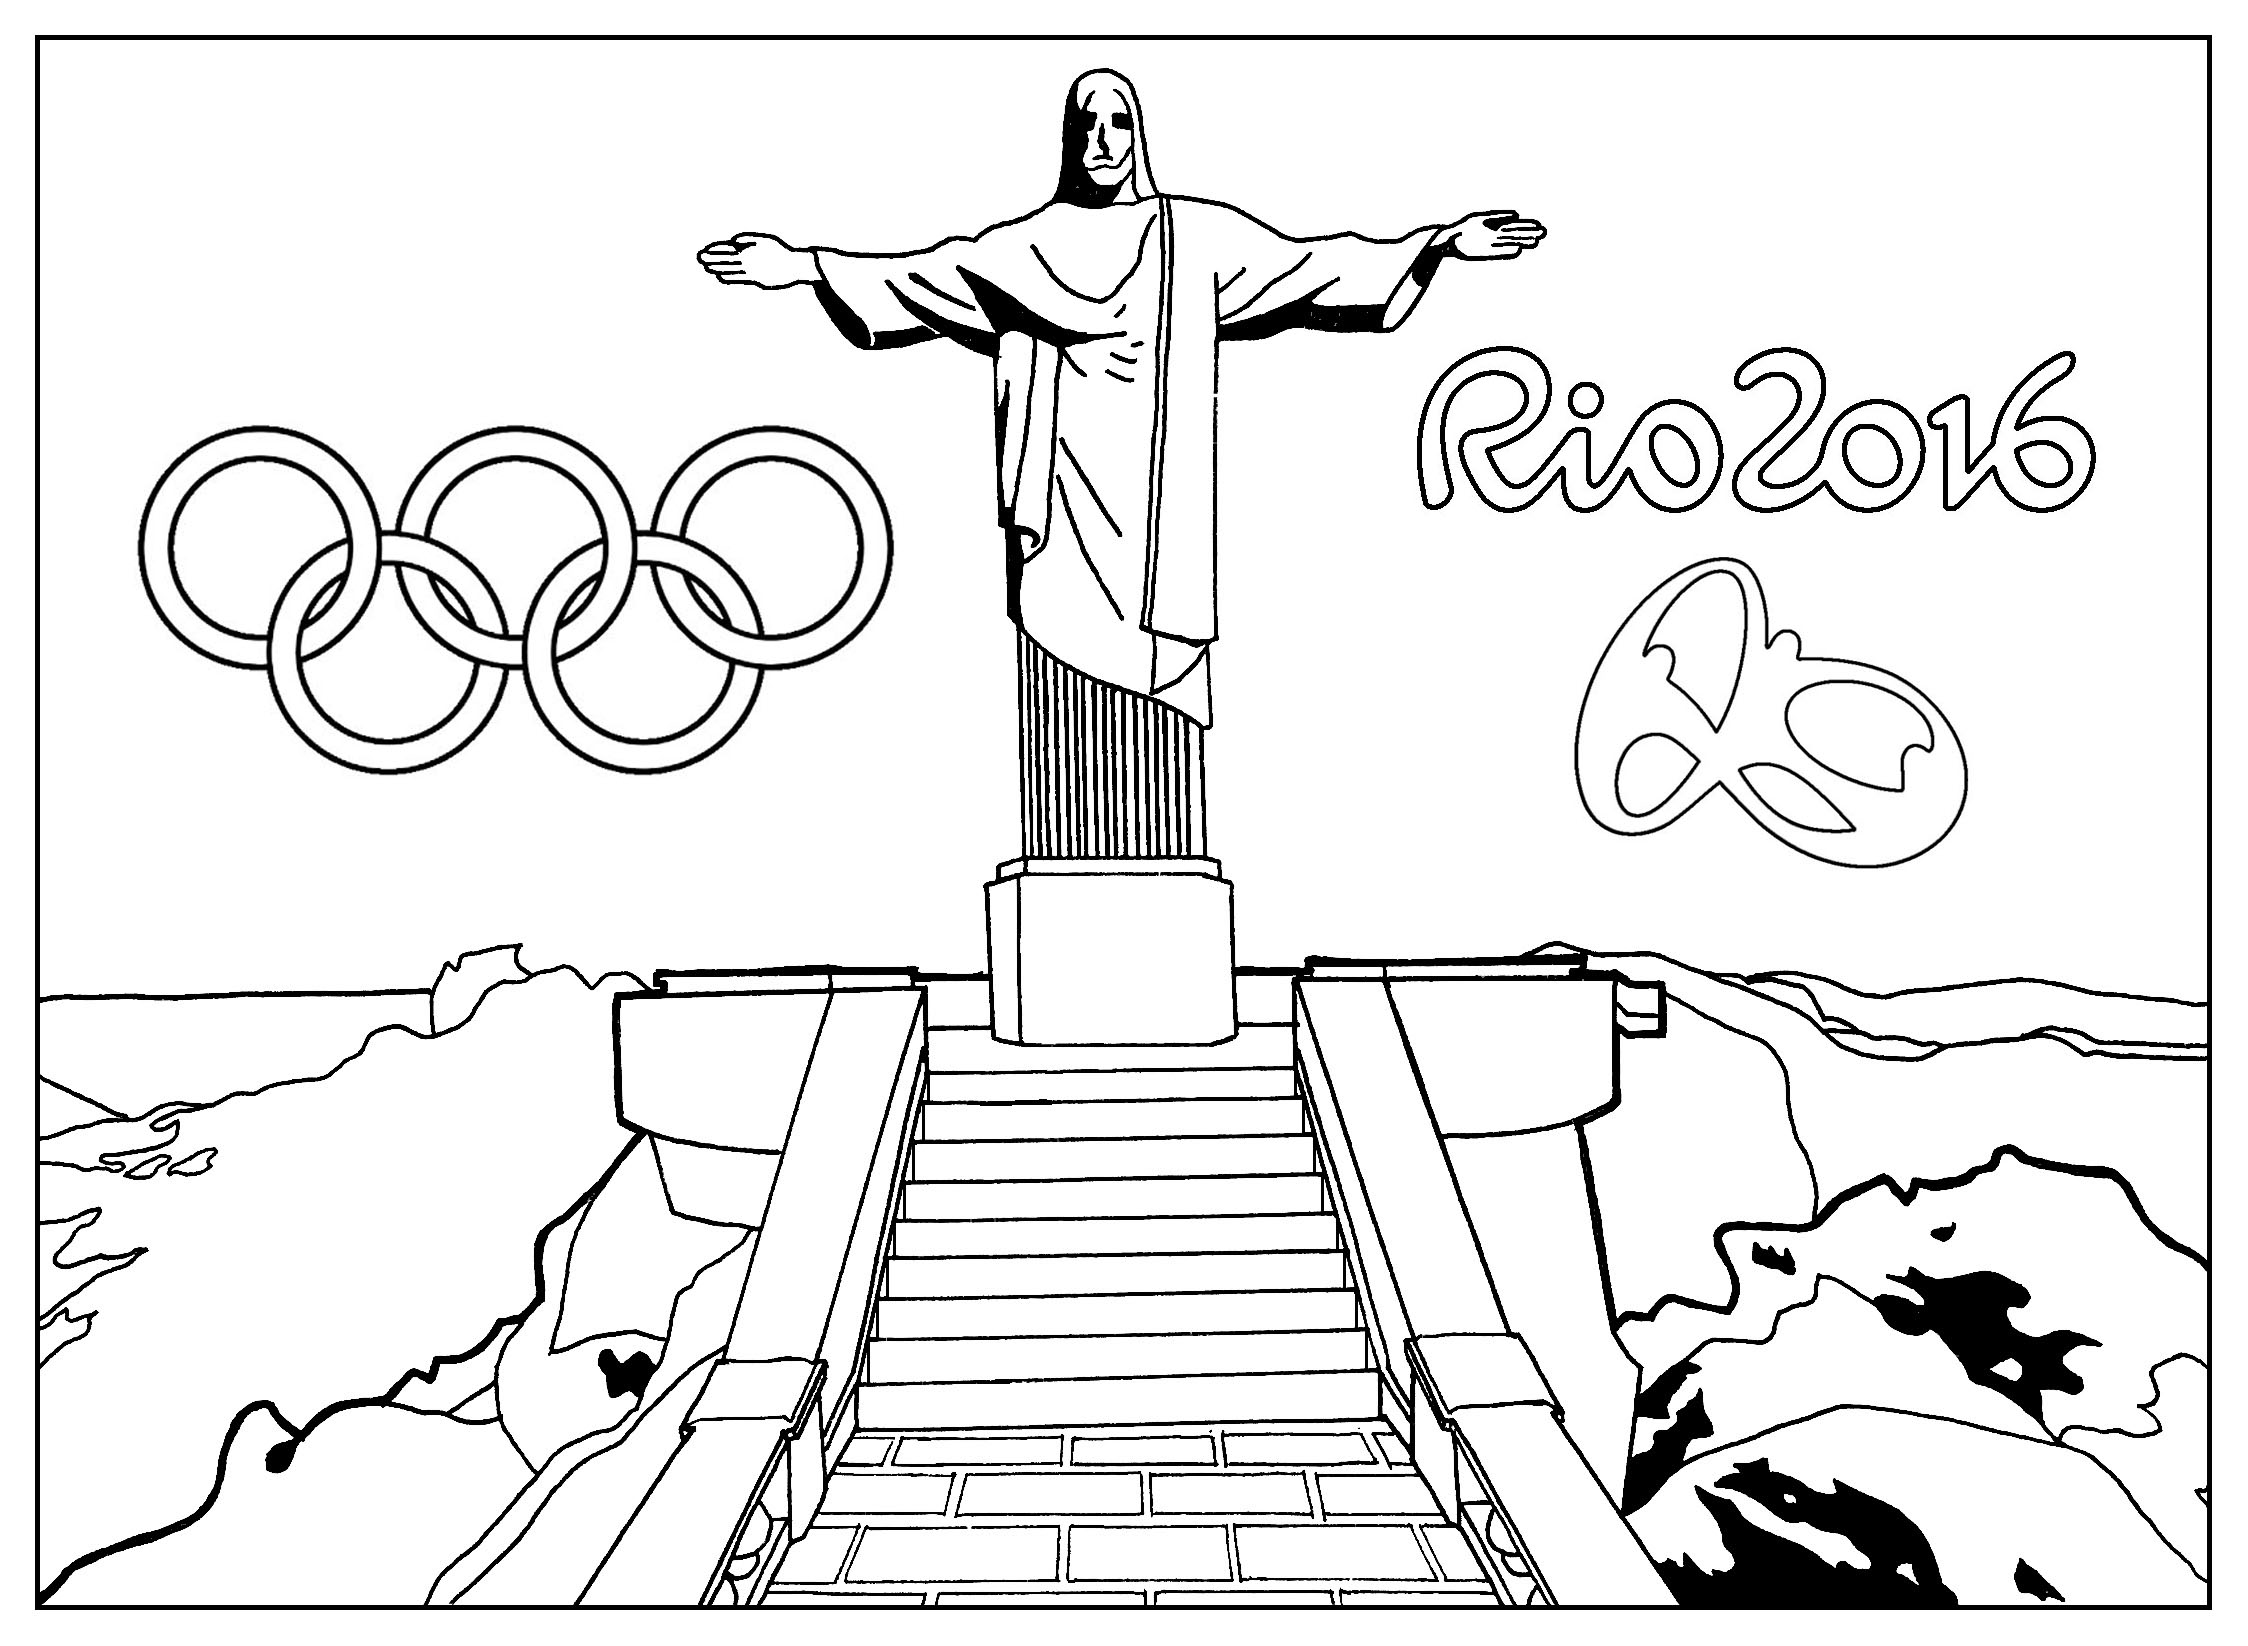 Desenhos do Jogos Olímpicos para colorir